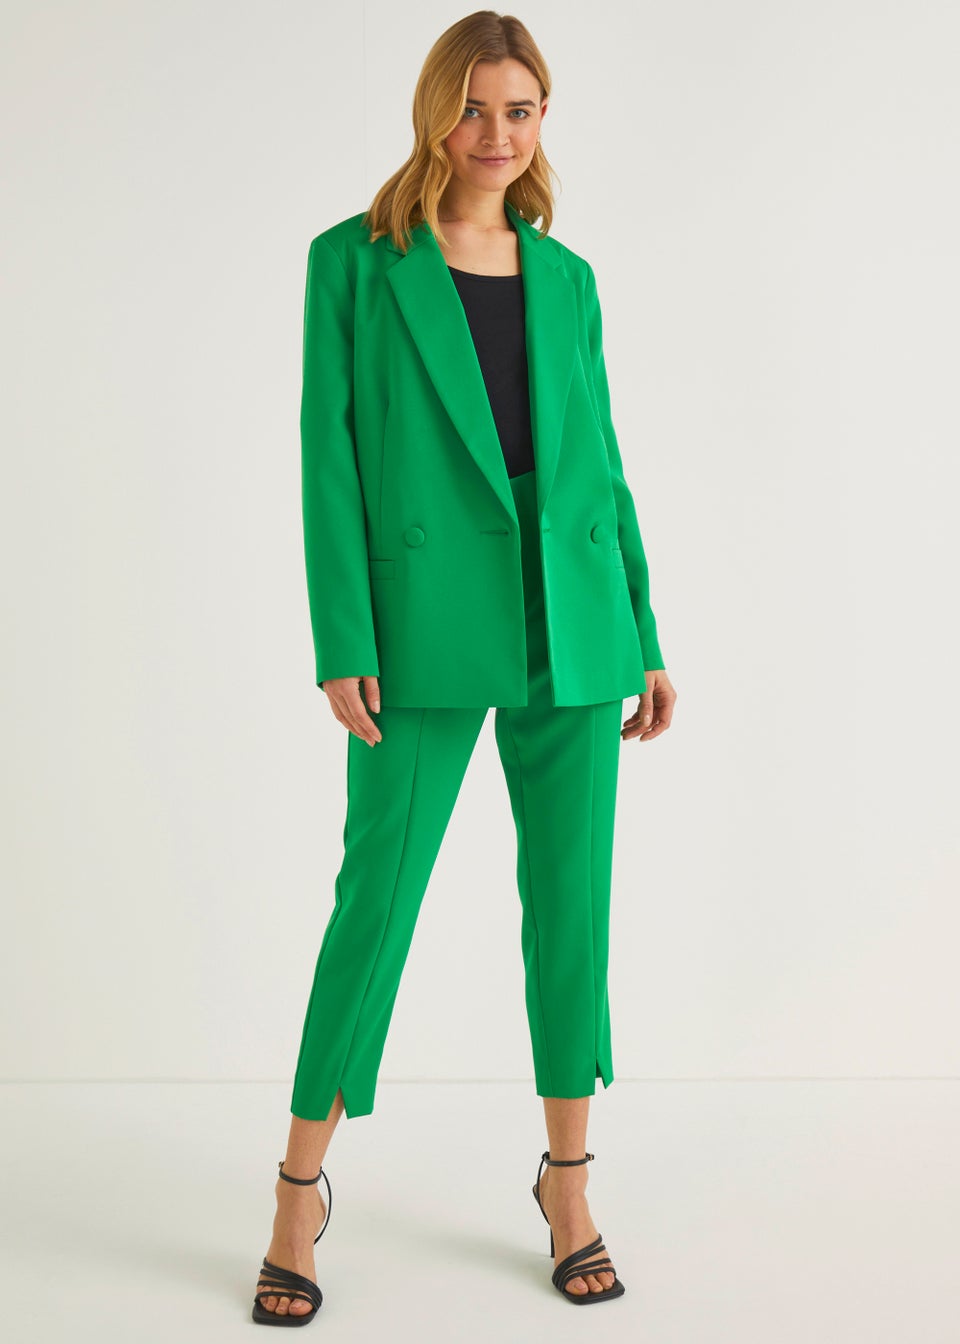 Green Women Shawl Lapel Jacketpants Women Business Suits Women Pantsuit  Office Uniform Style Female Trouser Suit Custom Made  Pant Suits   AliExpress